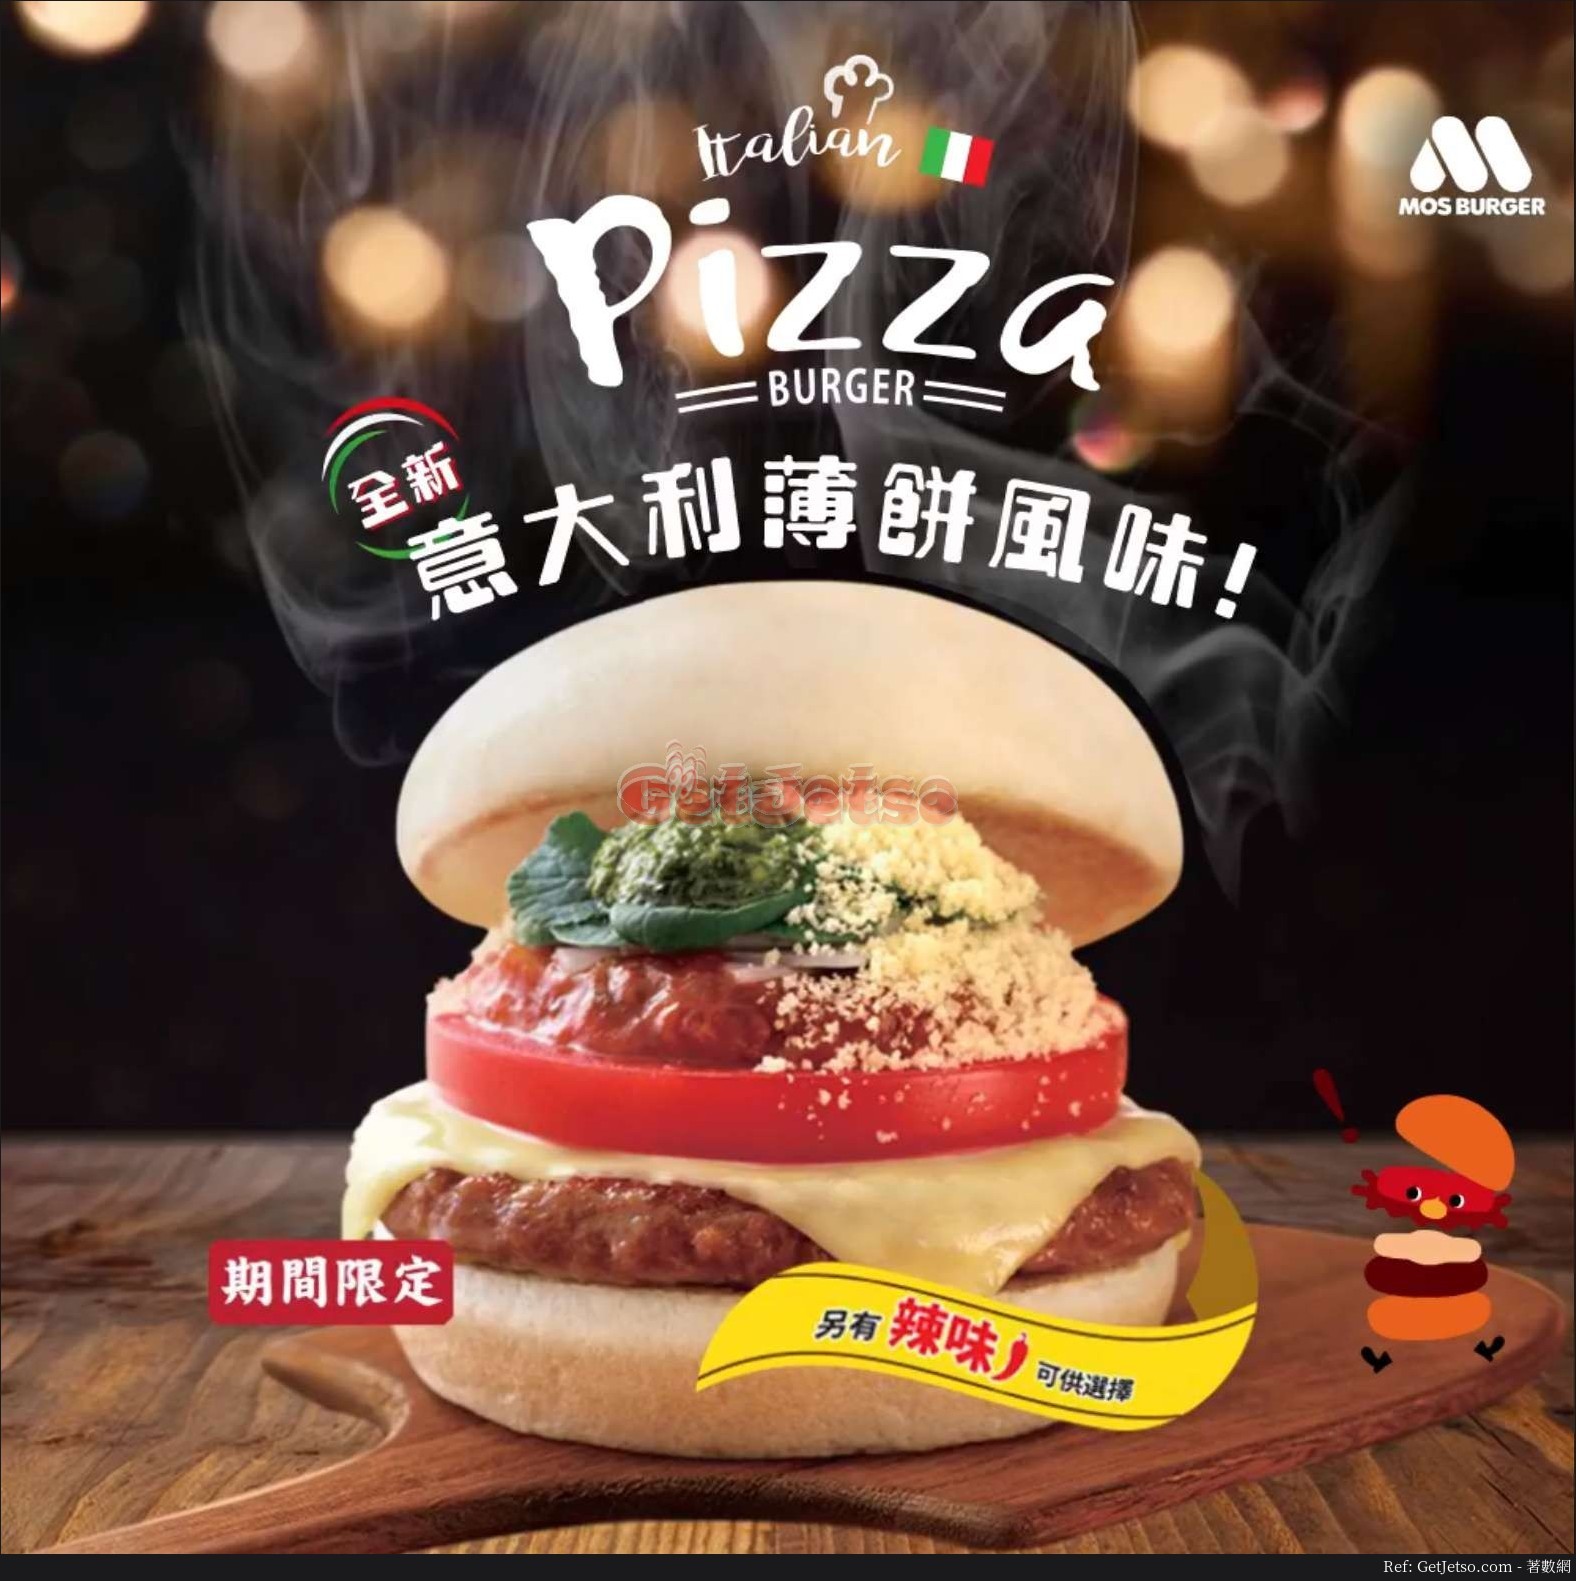 MOS Burger 全新意大利Pizza風味Burger圖片1